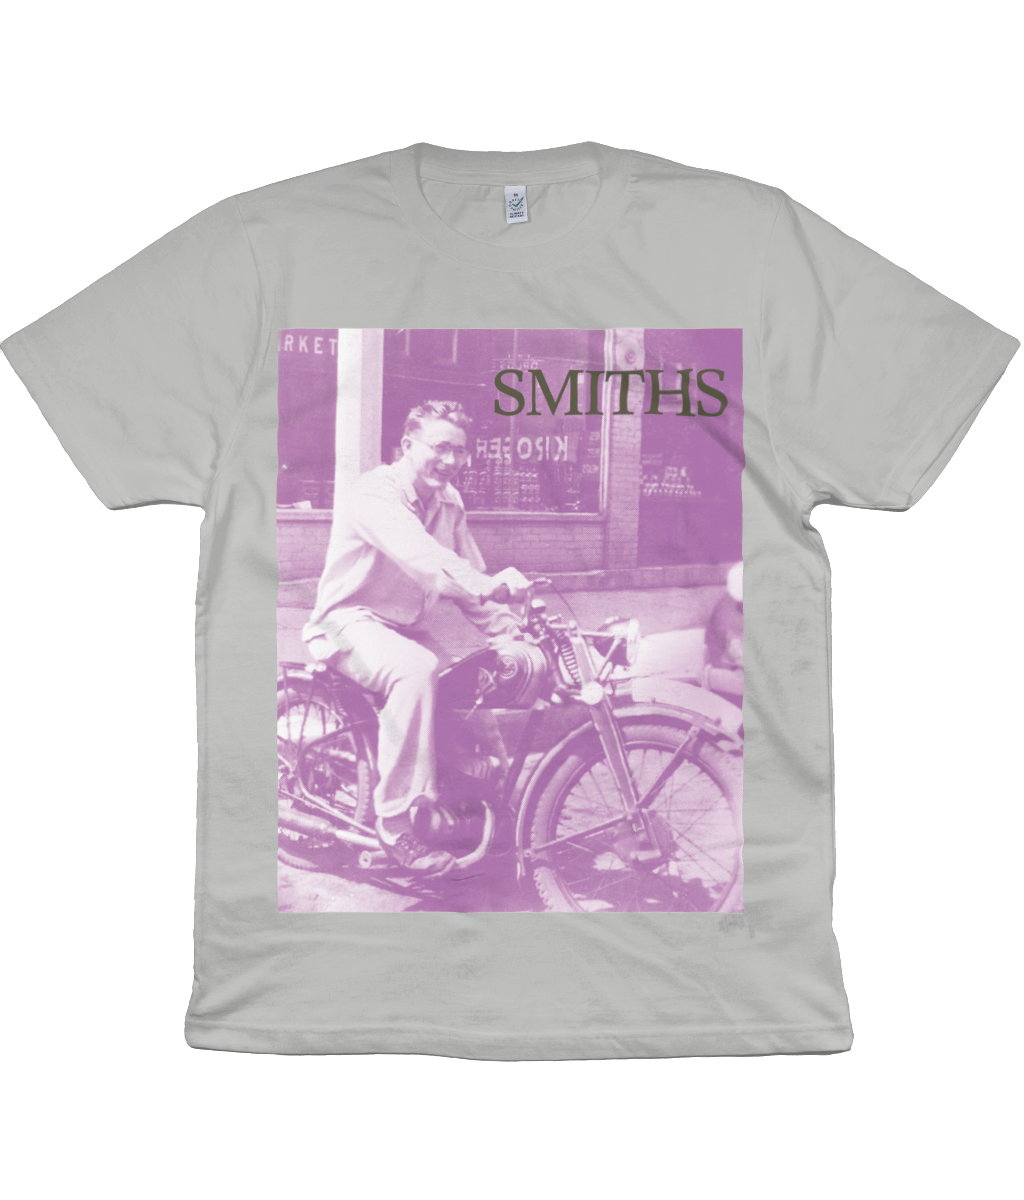 THE SMITHS - Bigmouth Strikes Again - 1986 - Promo